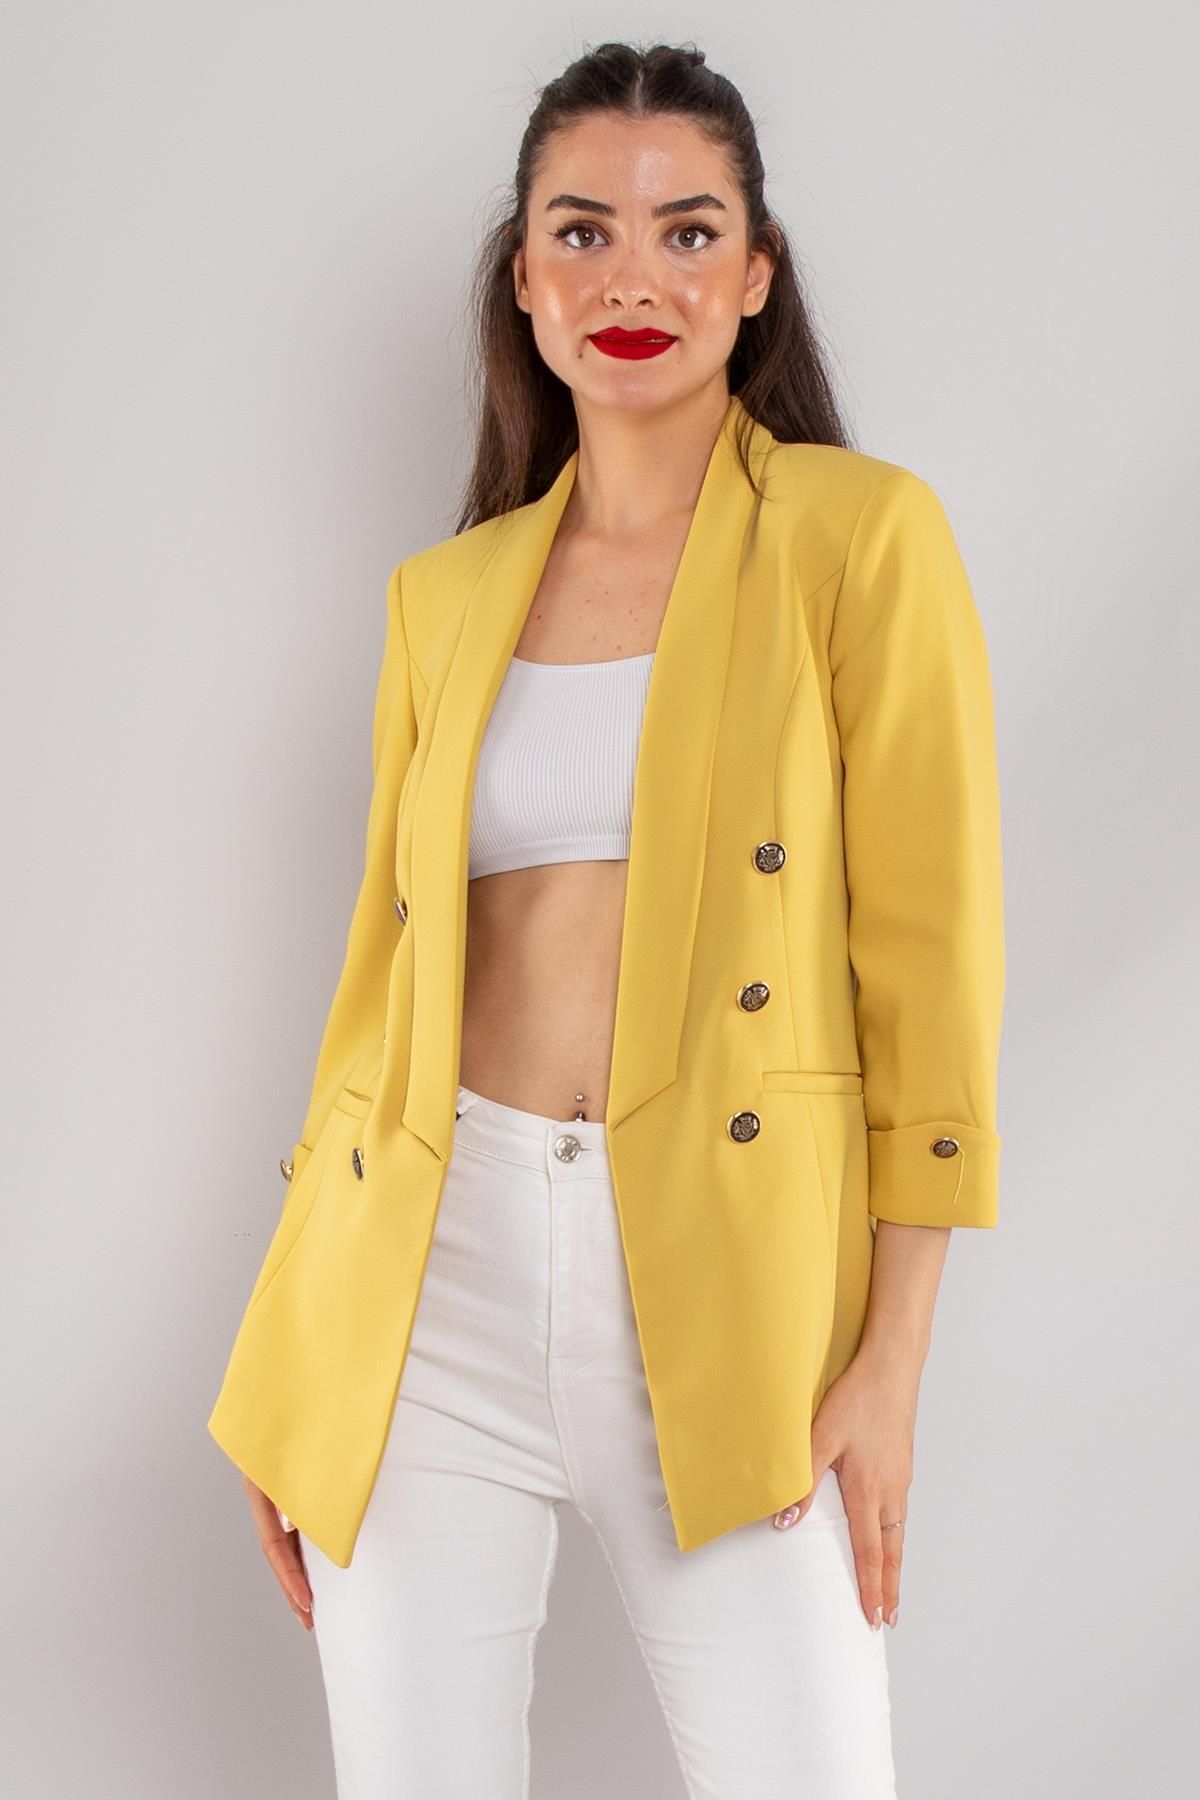 Ayhan 90599 6 Gold Düğme Detay Blazer Kadın Ceket